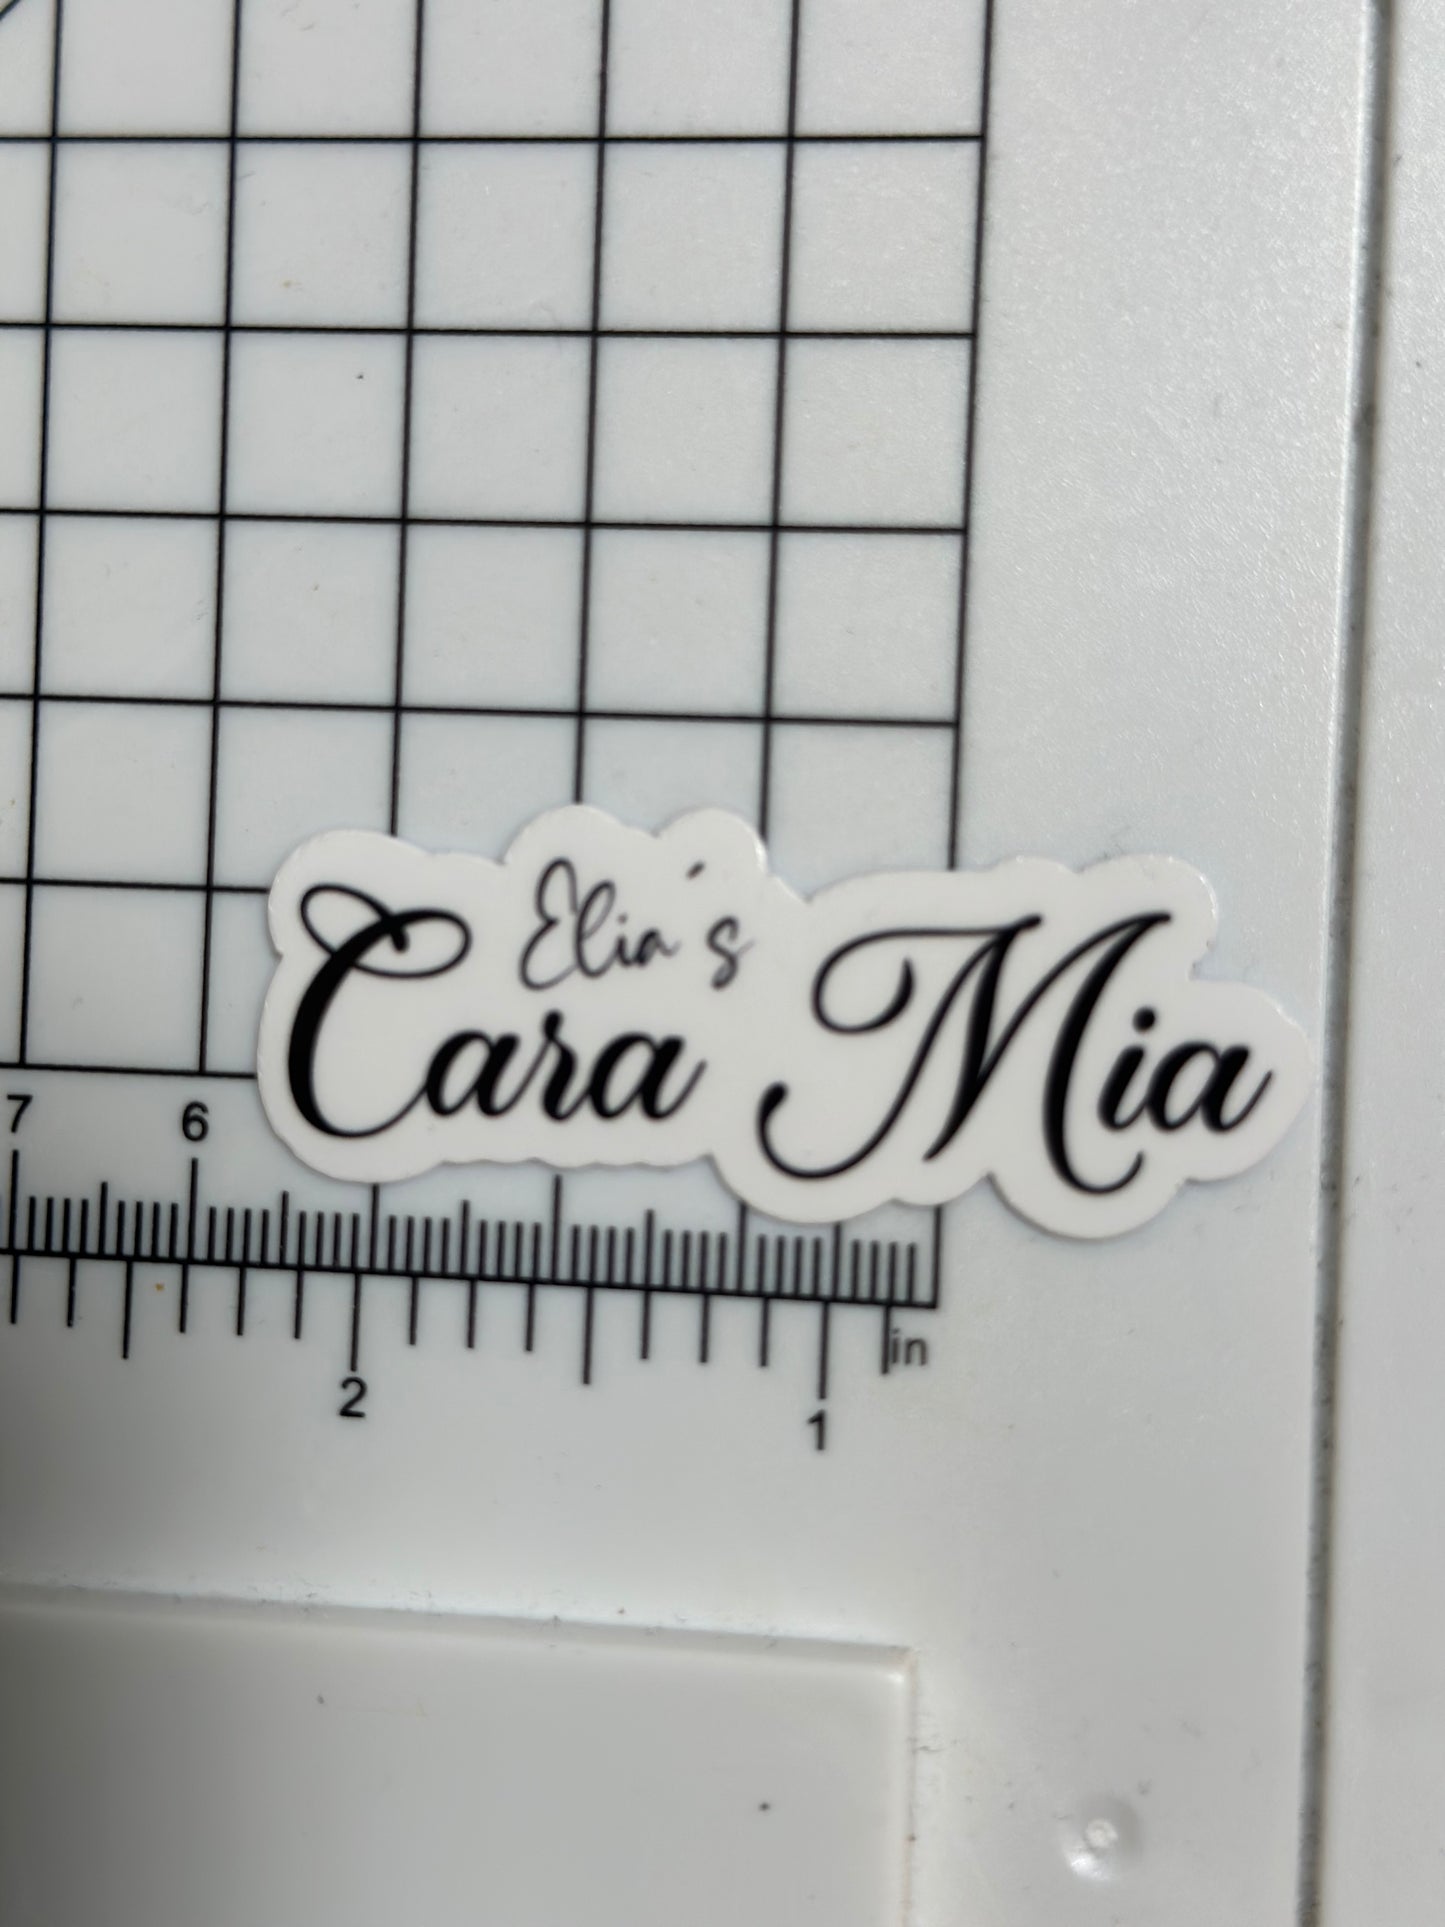 Elia's Cara Mia Sticker